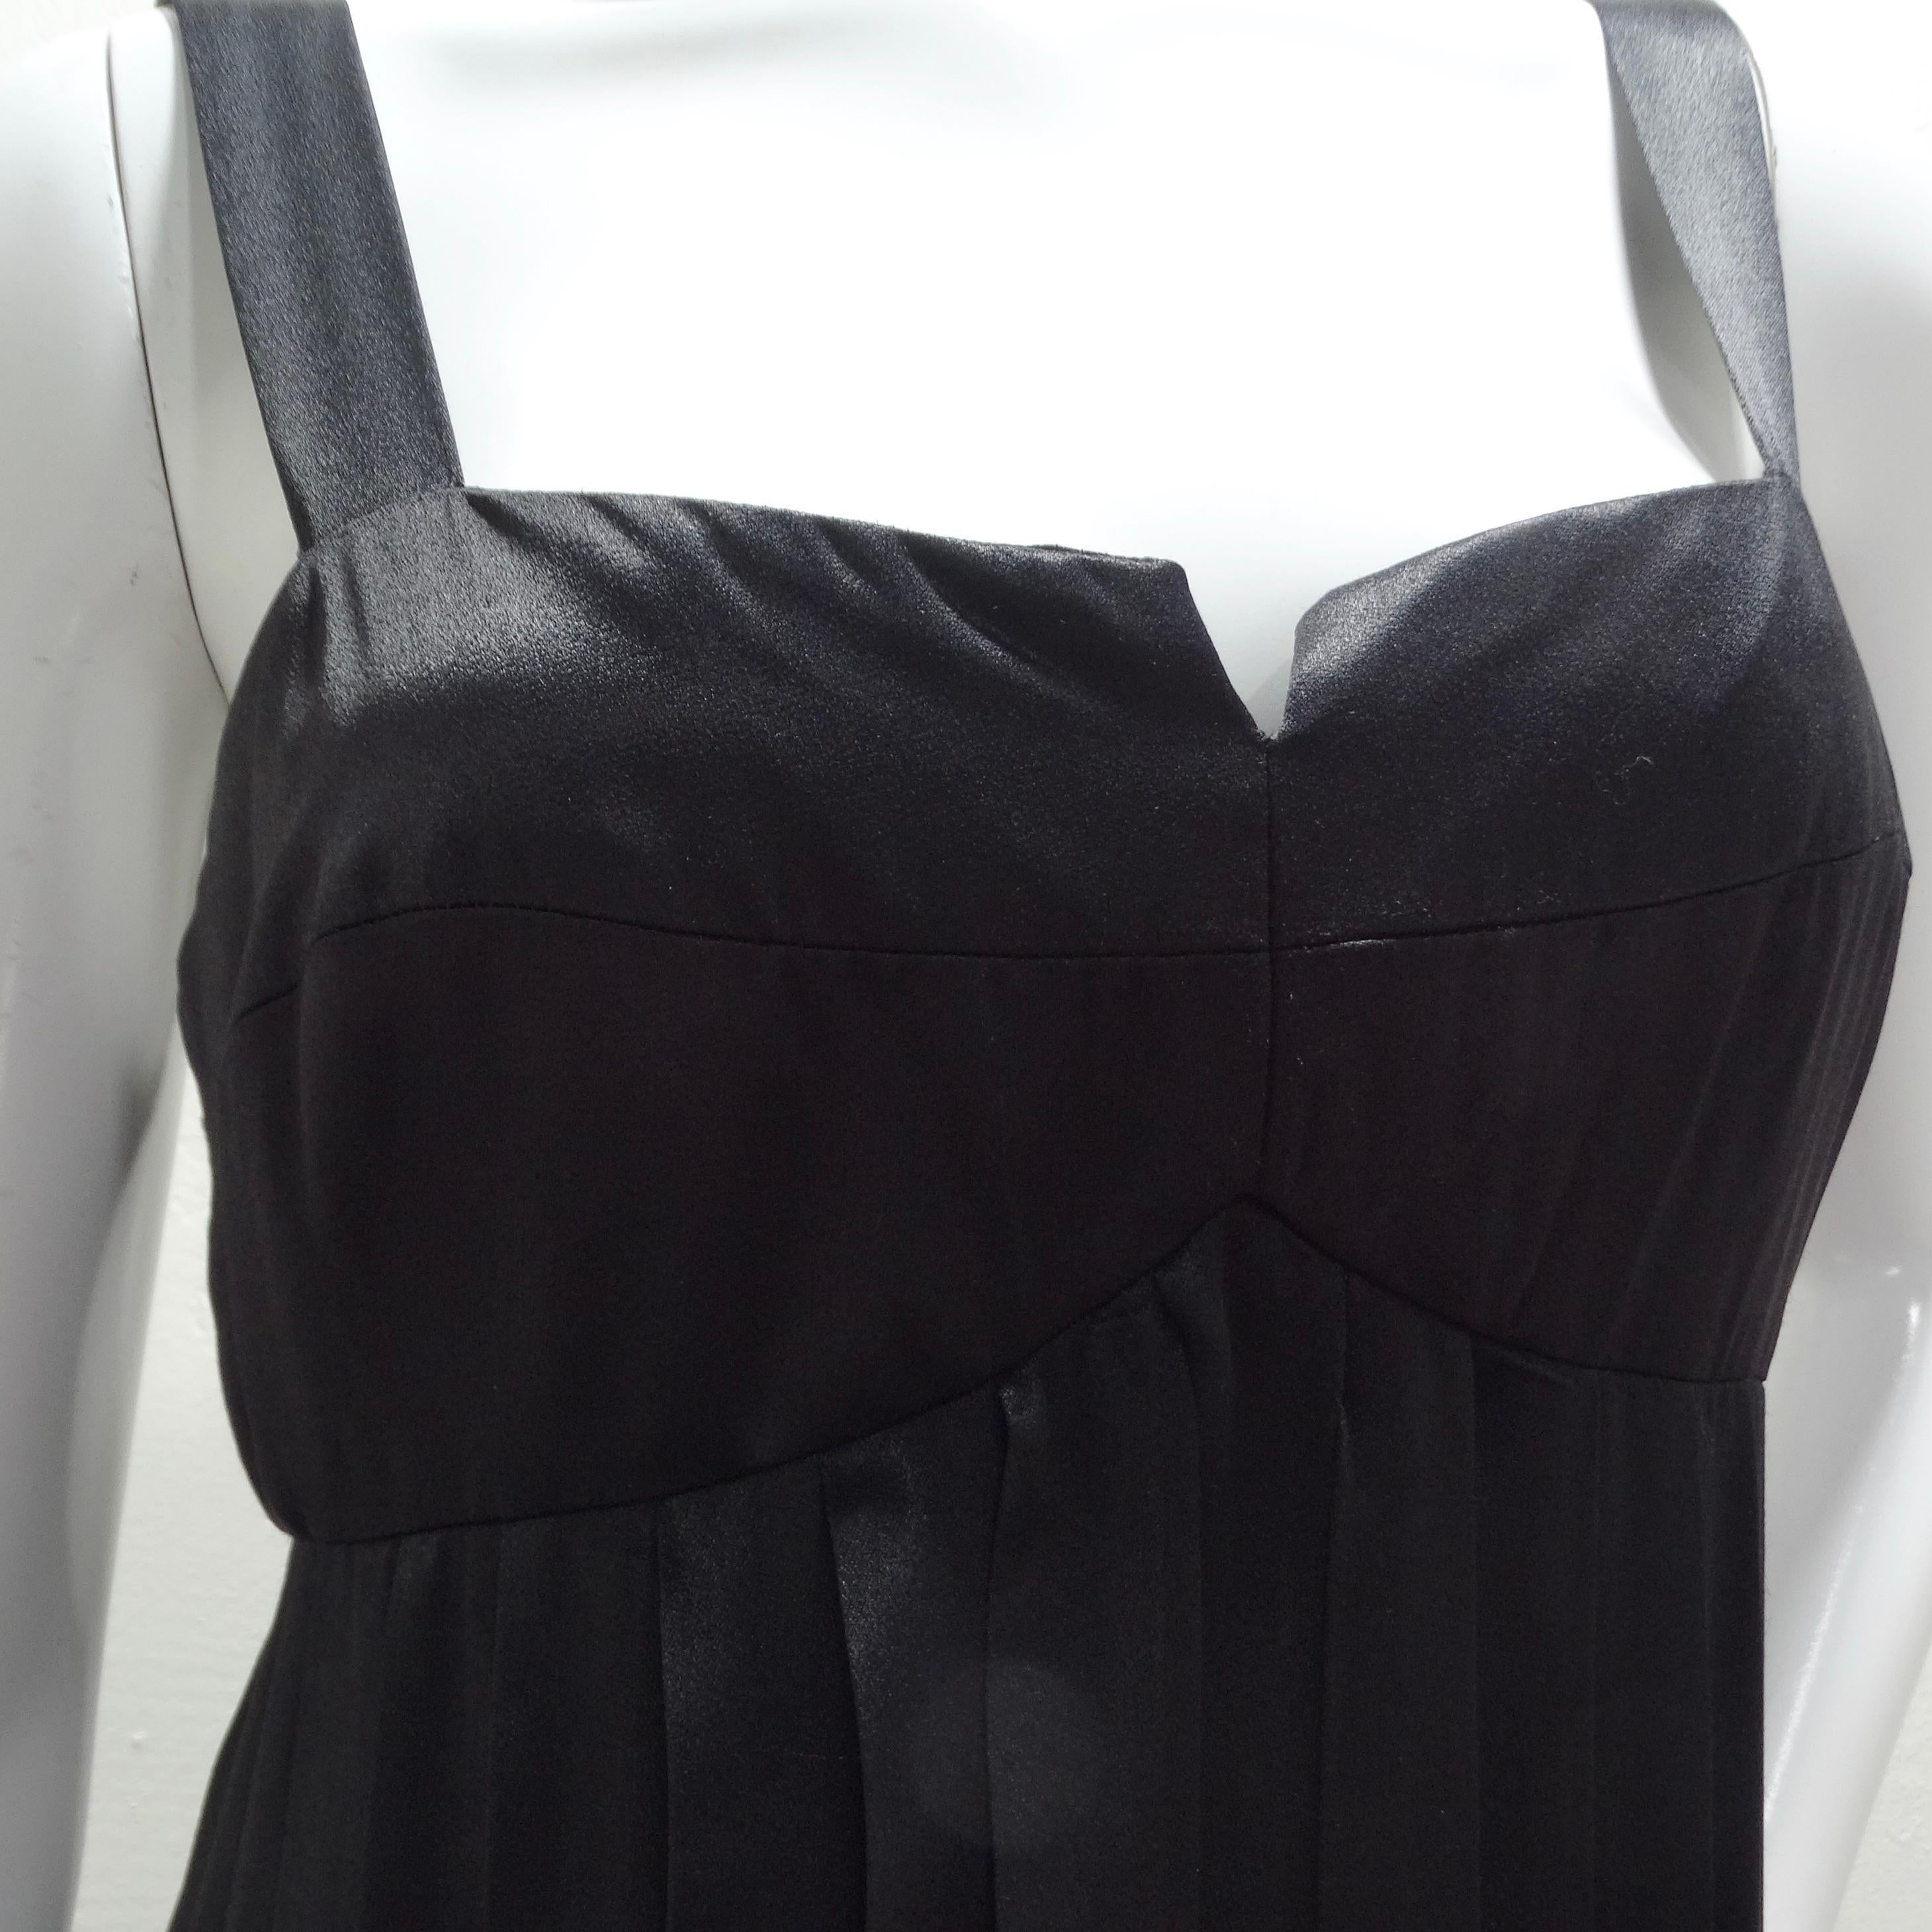 Das Lillie Rubin 1960s Black Carwash Maxi Dress ist ein atemberaubendes Stück, das gleichermaßen Eleganz und Verspieltheit ausstrahlt. Dieses schwarze Maxikleid ist eine wahre Verkörperung des zeitlosen Stils, mit einem strukturierten Mieder im